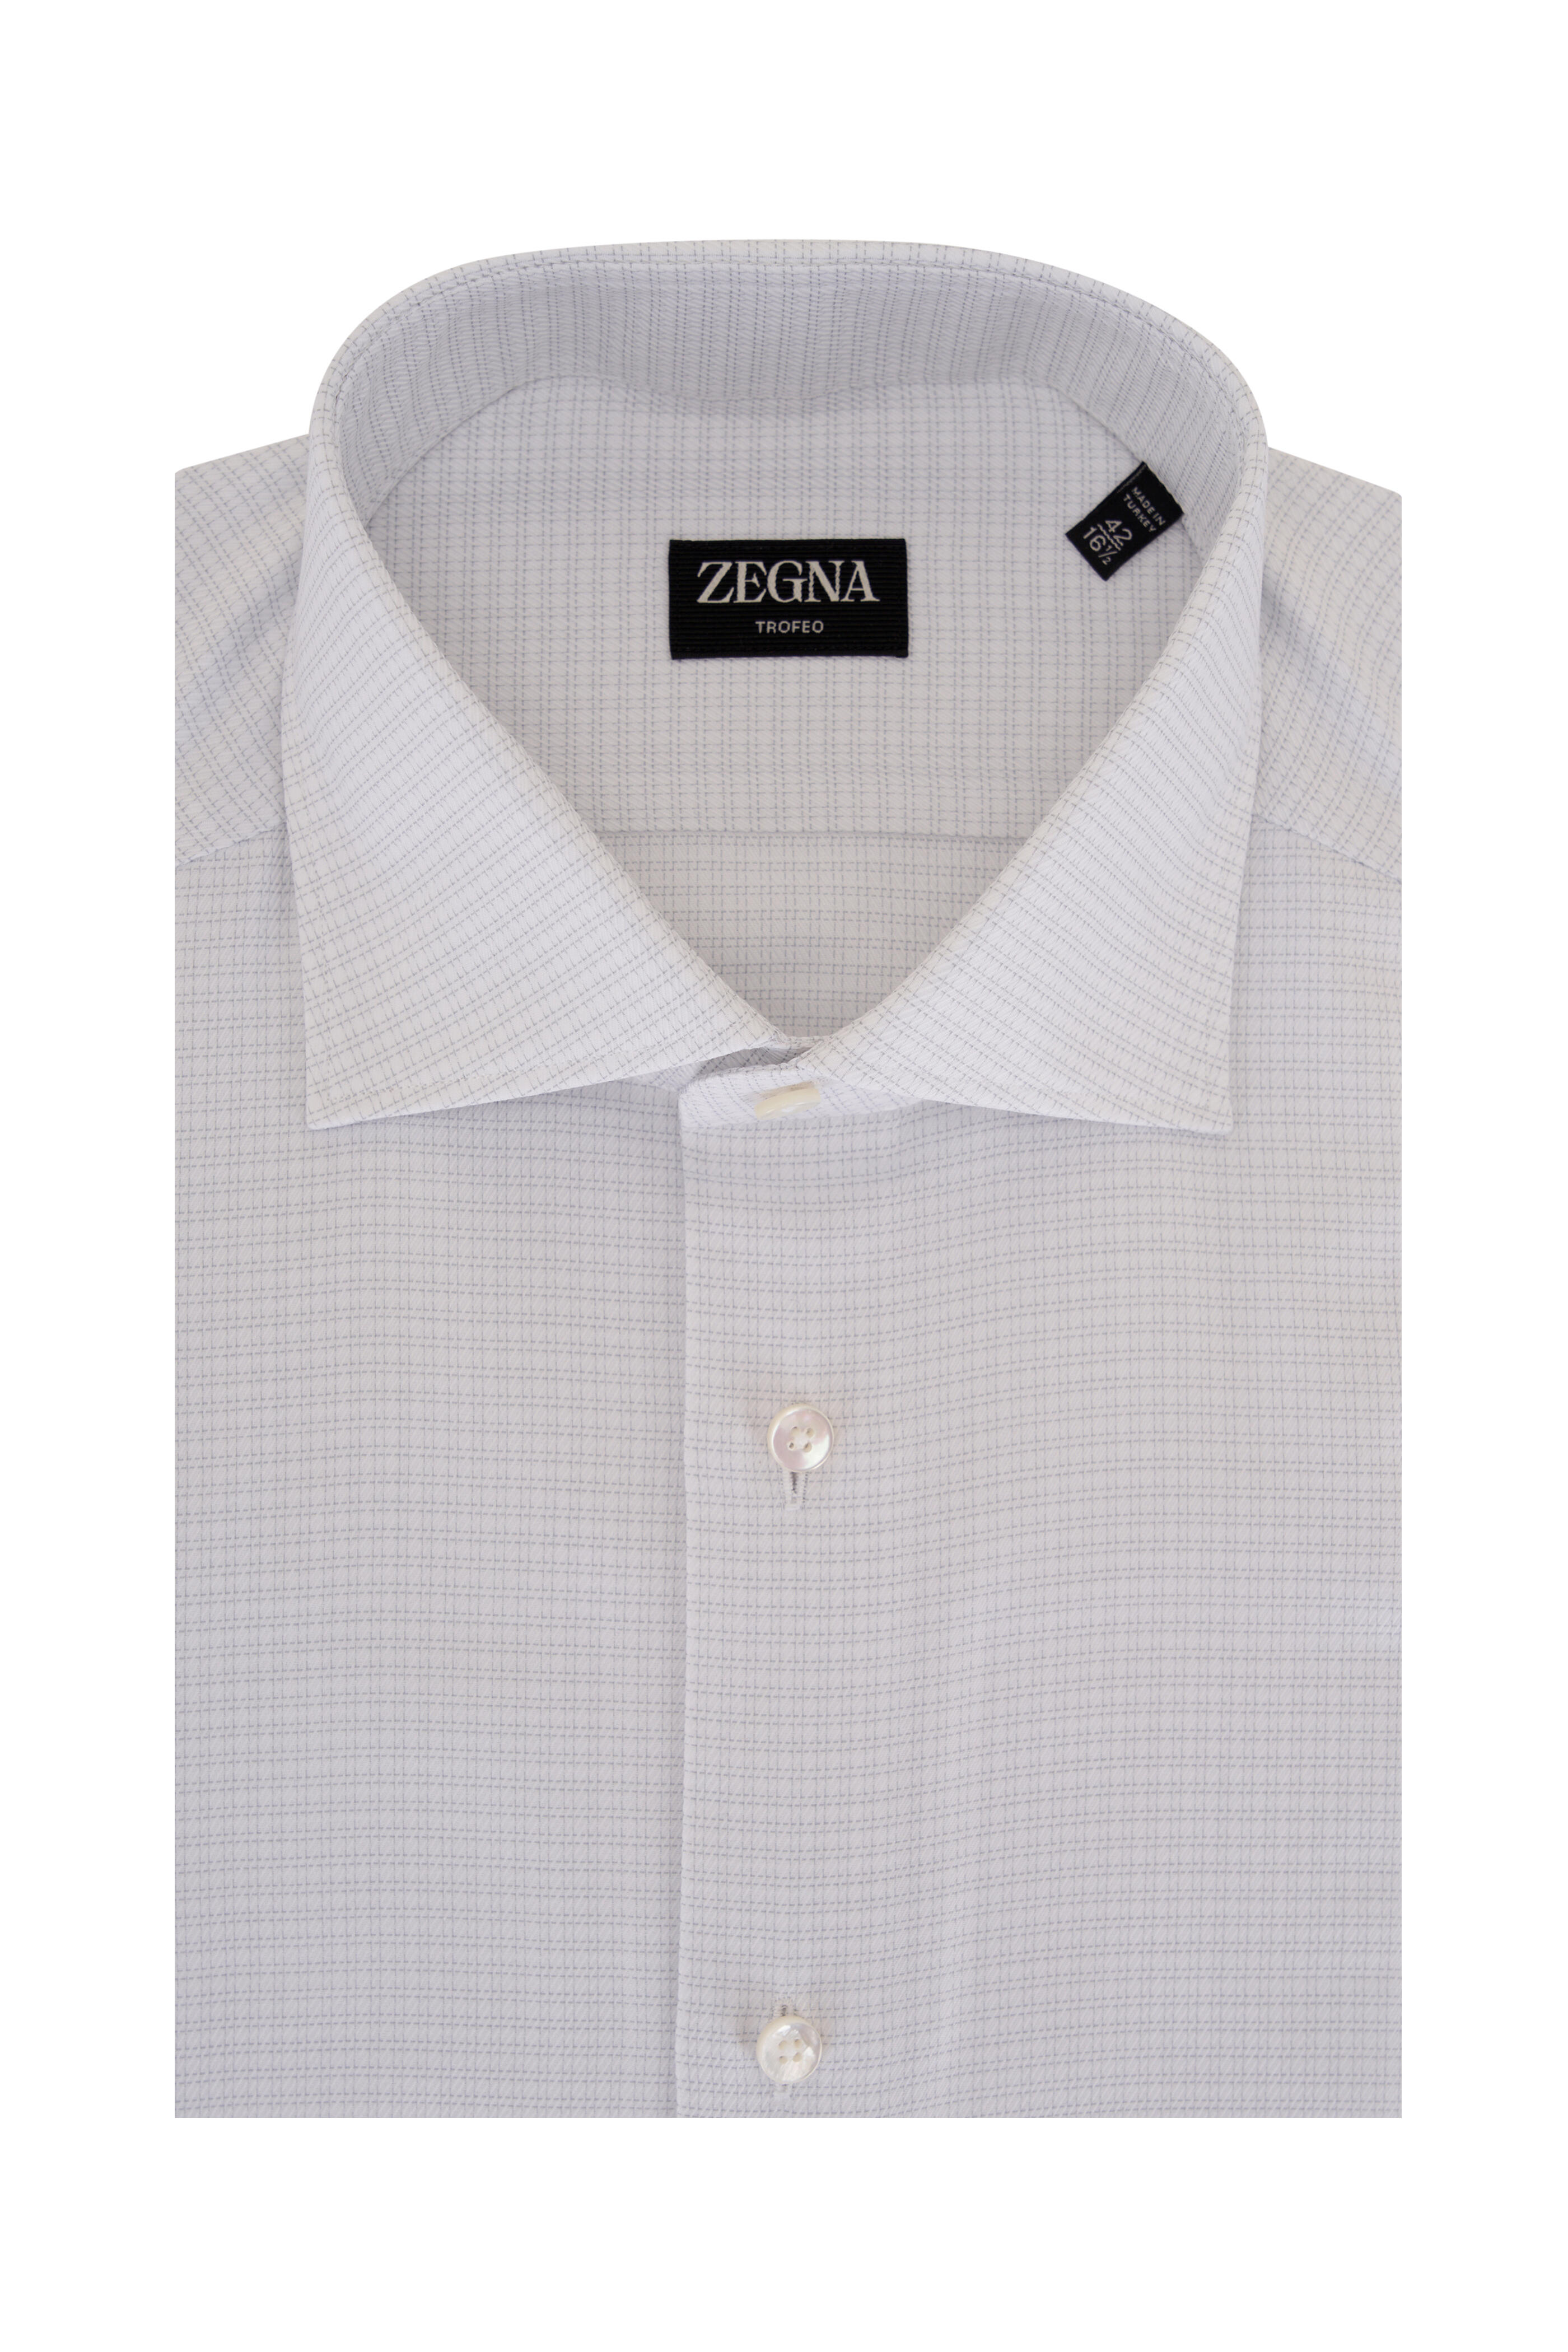 Zegna - Gray & White Check Cotton Dress Shirt | Mitchell Stores